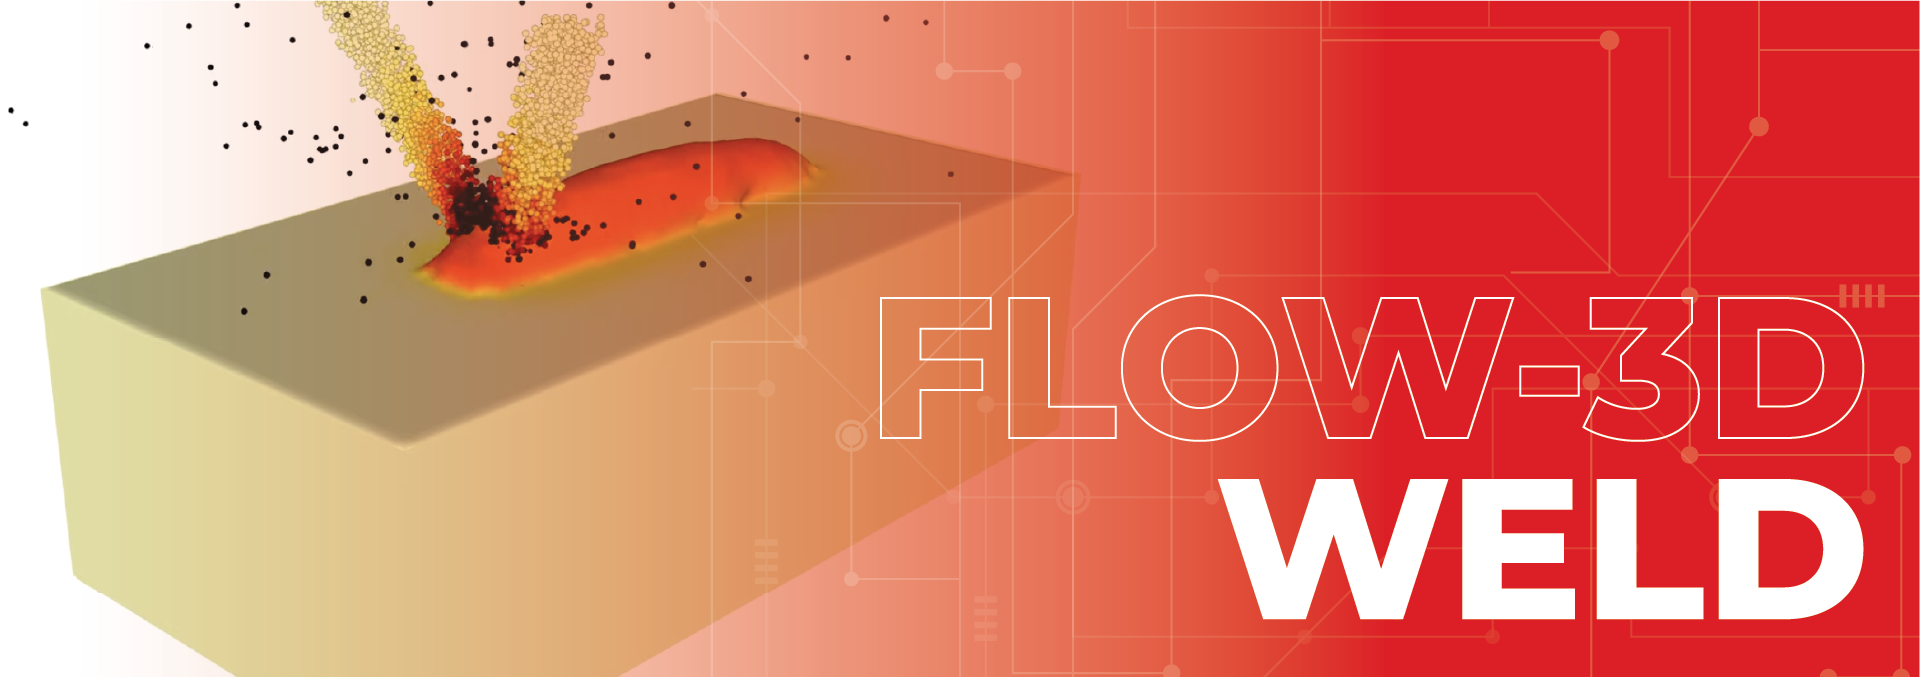 Flow-3D Weld